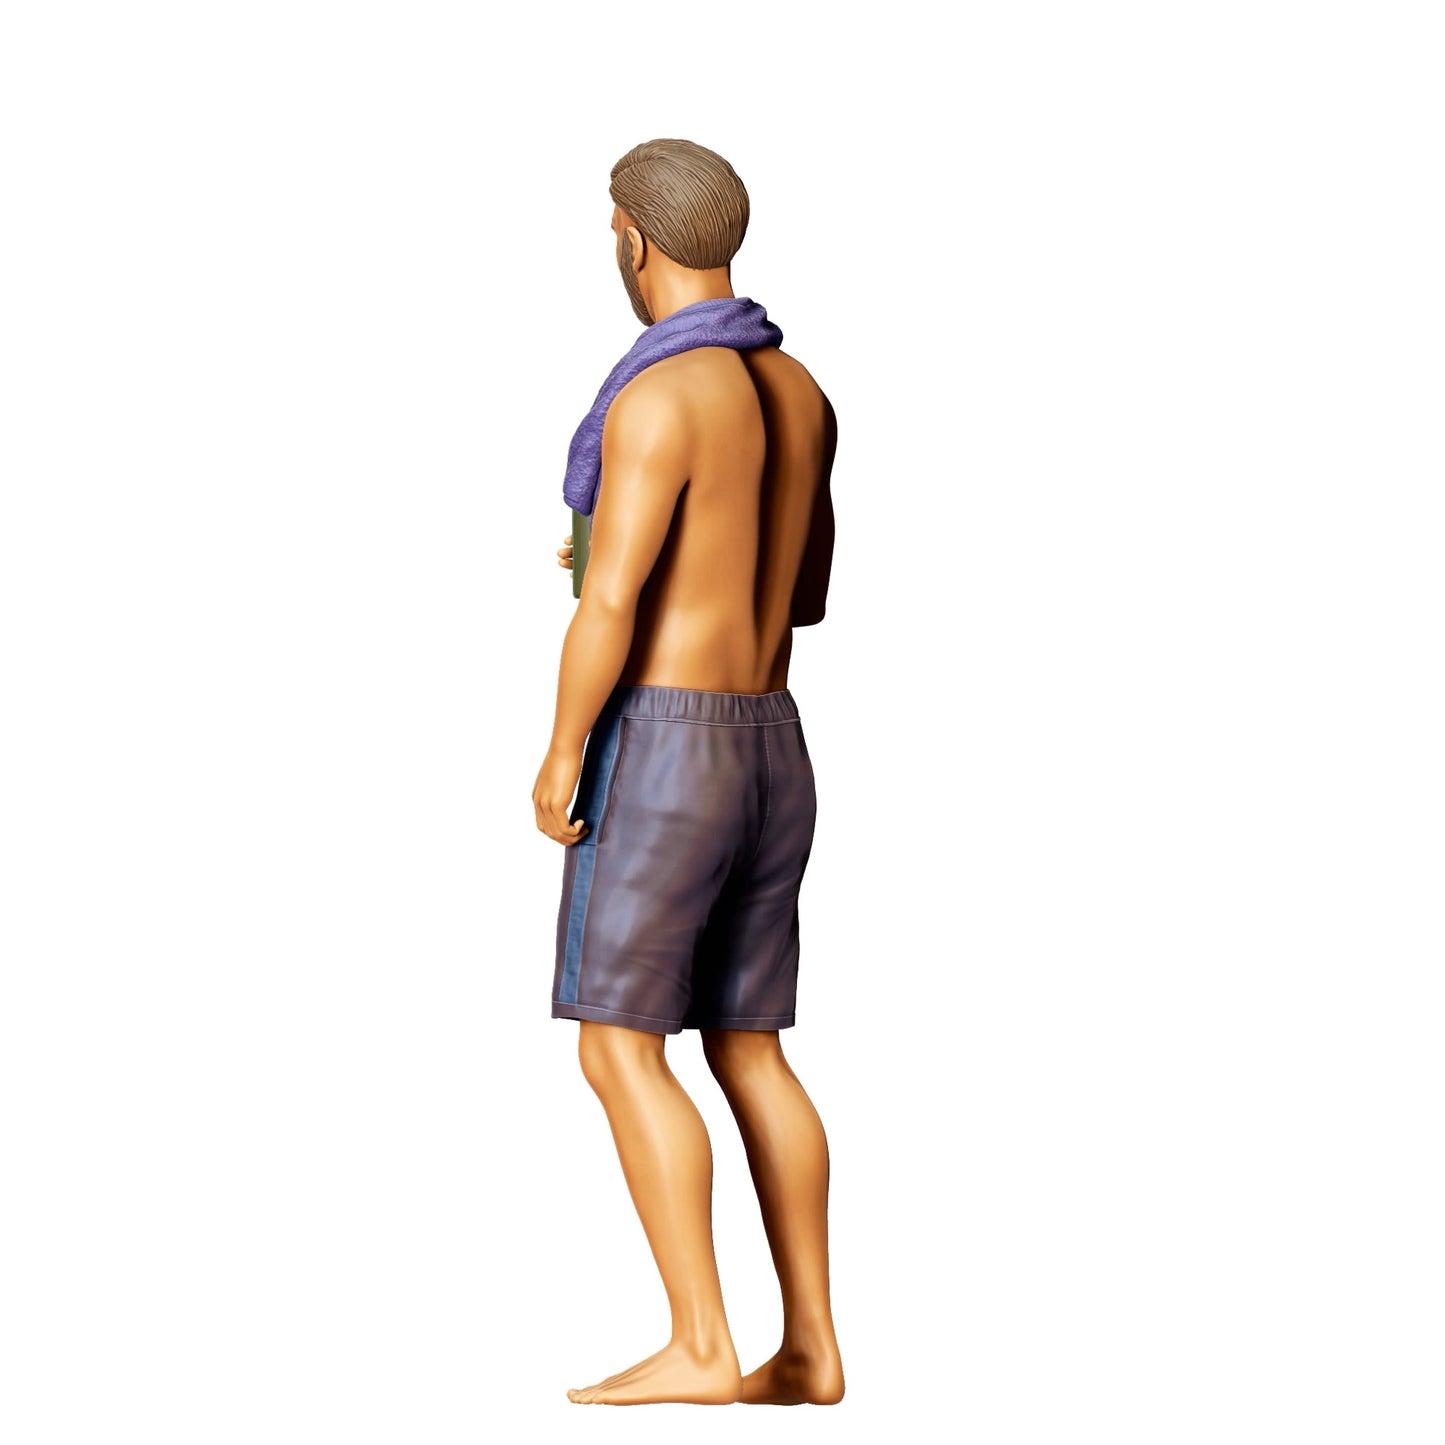 Diorama Modellbau Produktfoto 0: Pool Party Gäste - Mann mit Handtuch und Bierflasche (Ref. Nr. 321)